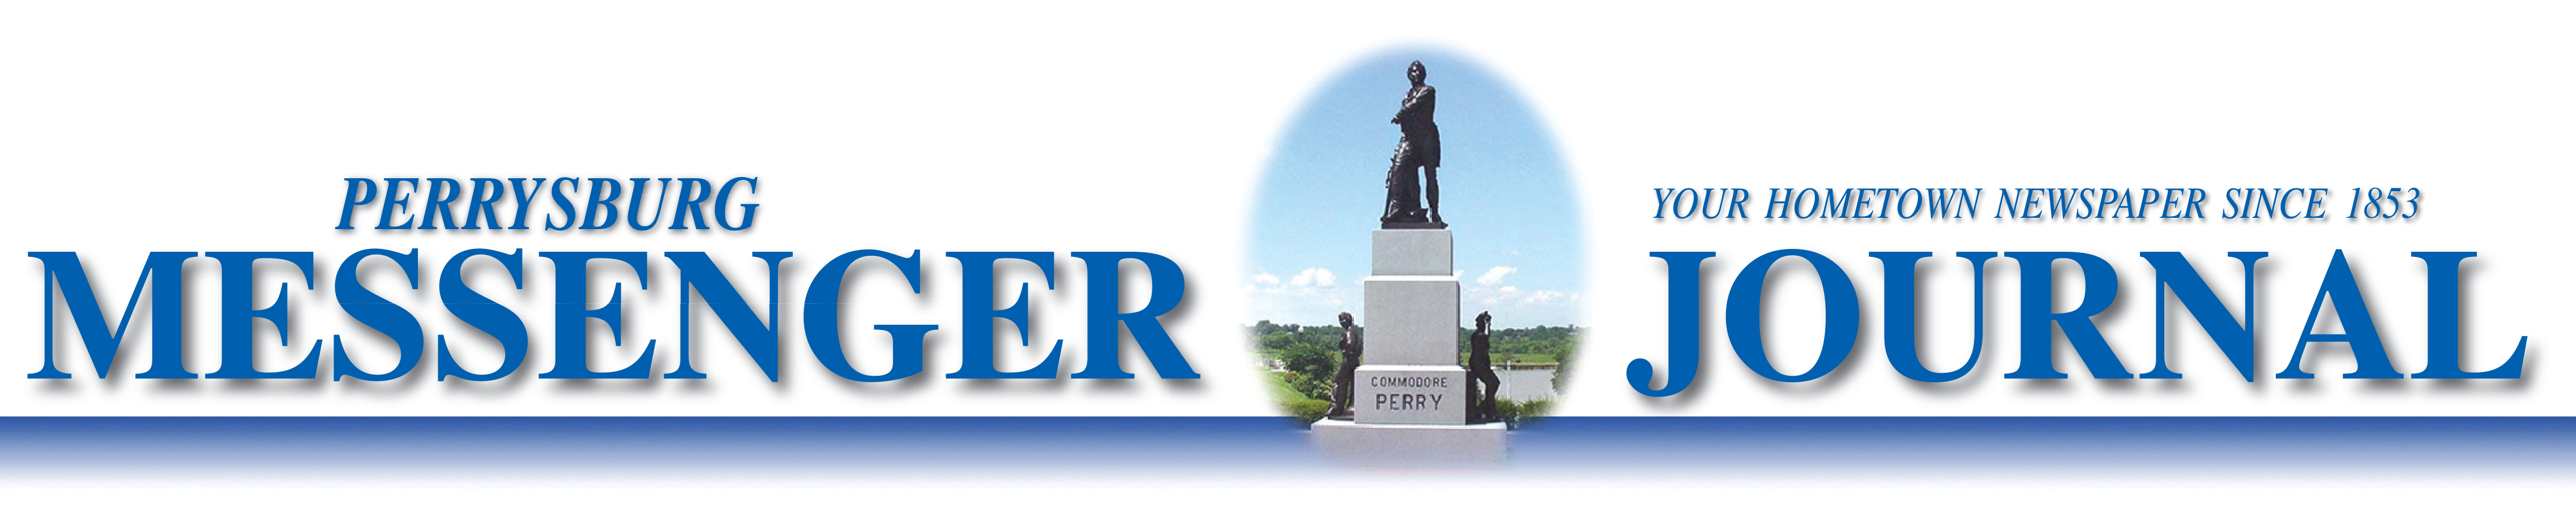 Perrysburg Messenger Journal Home